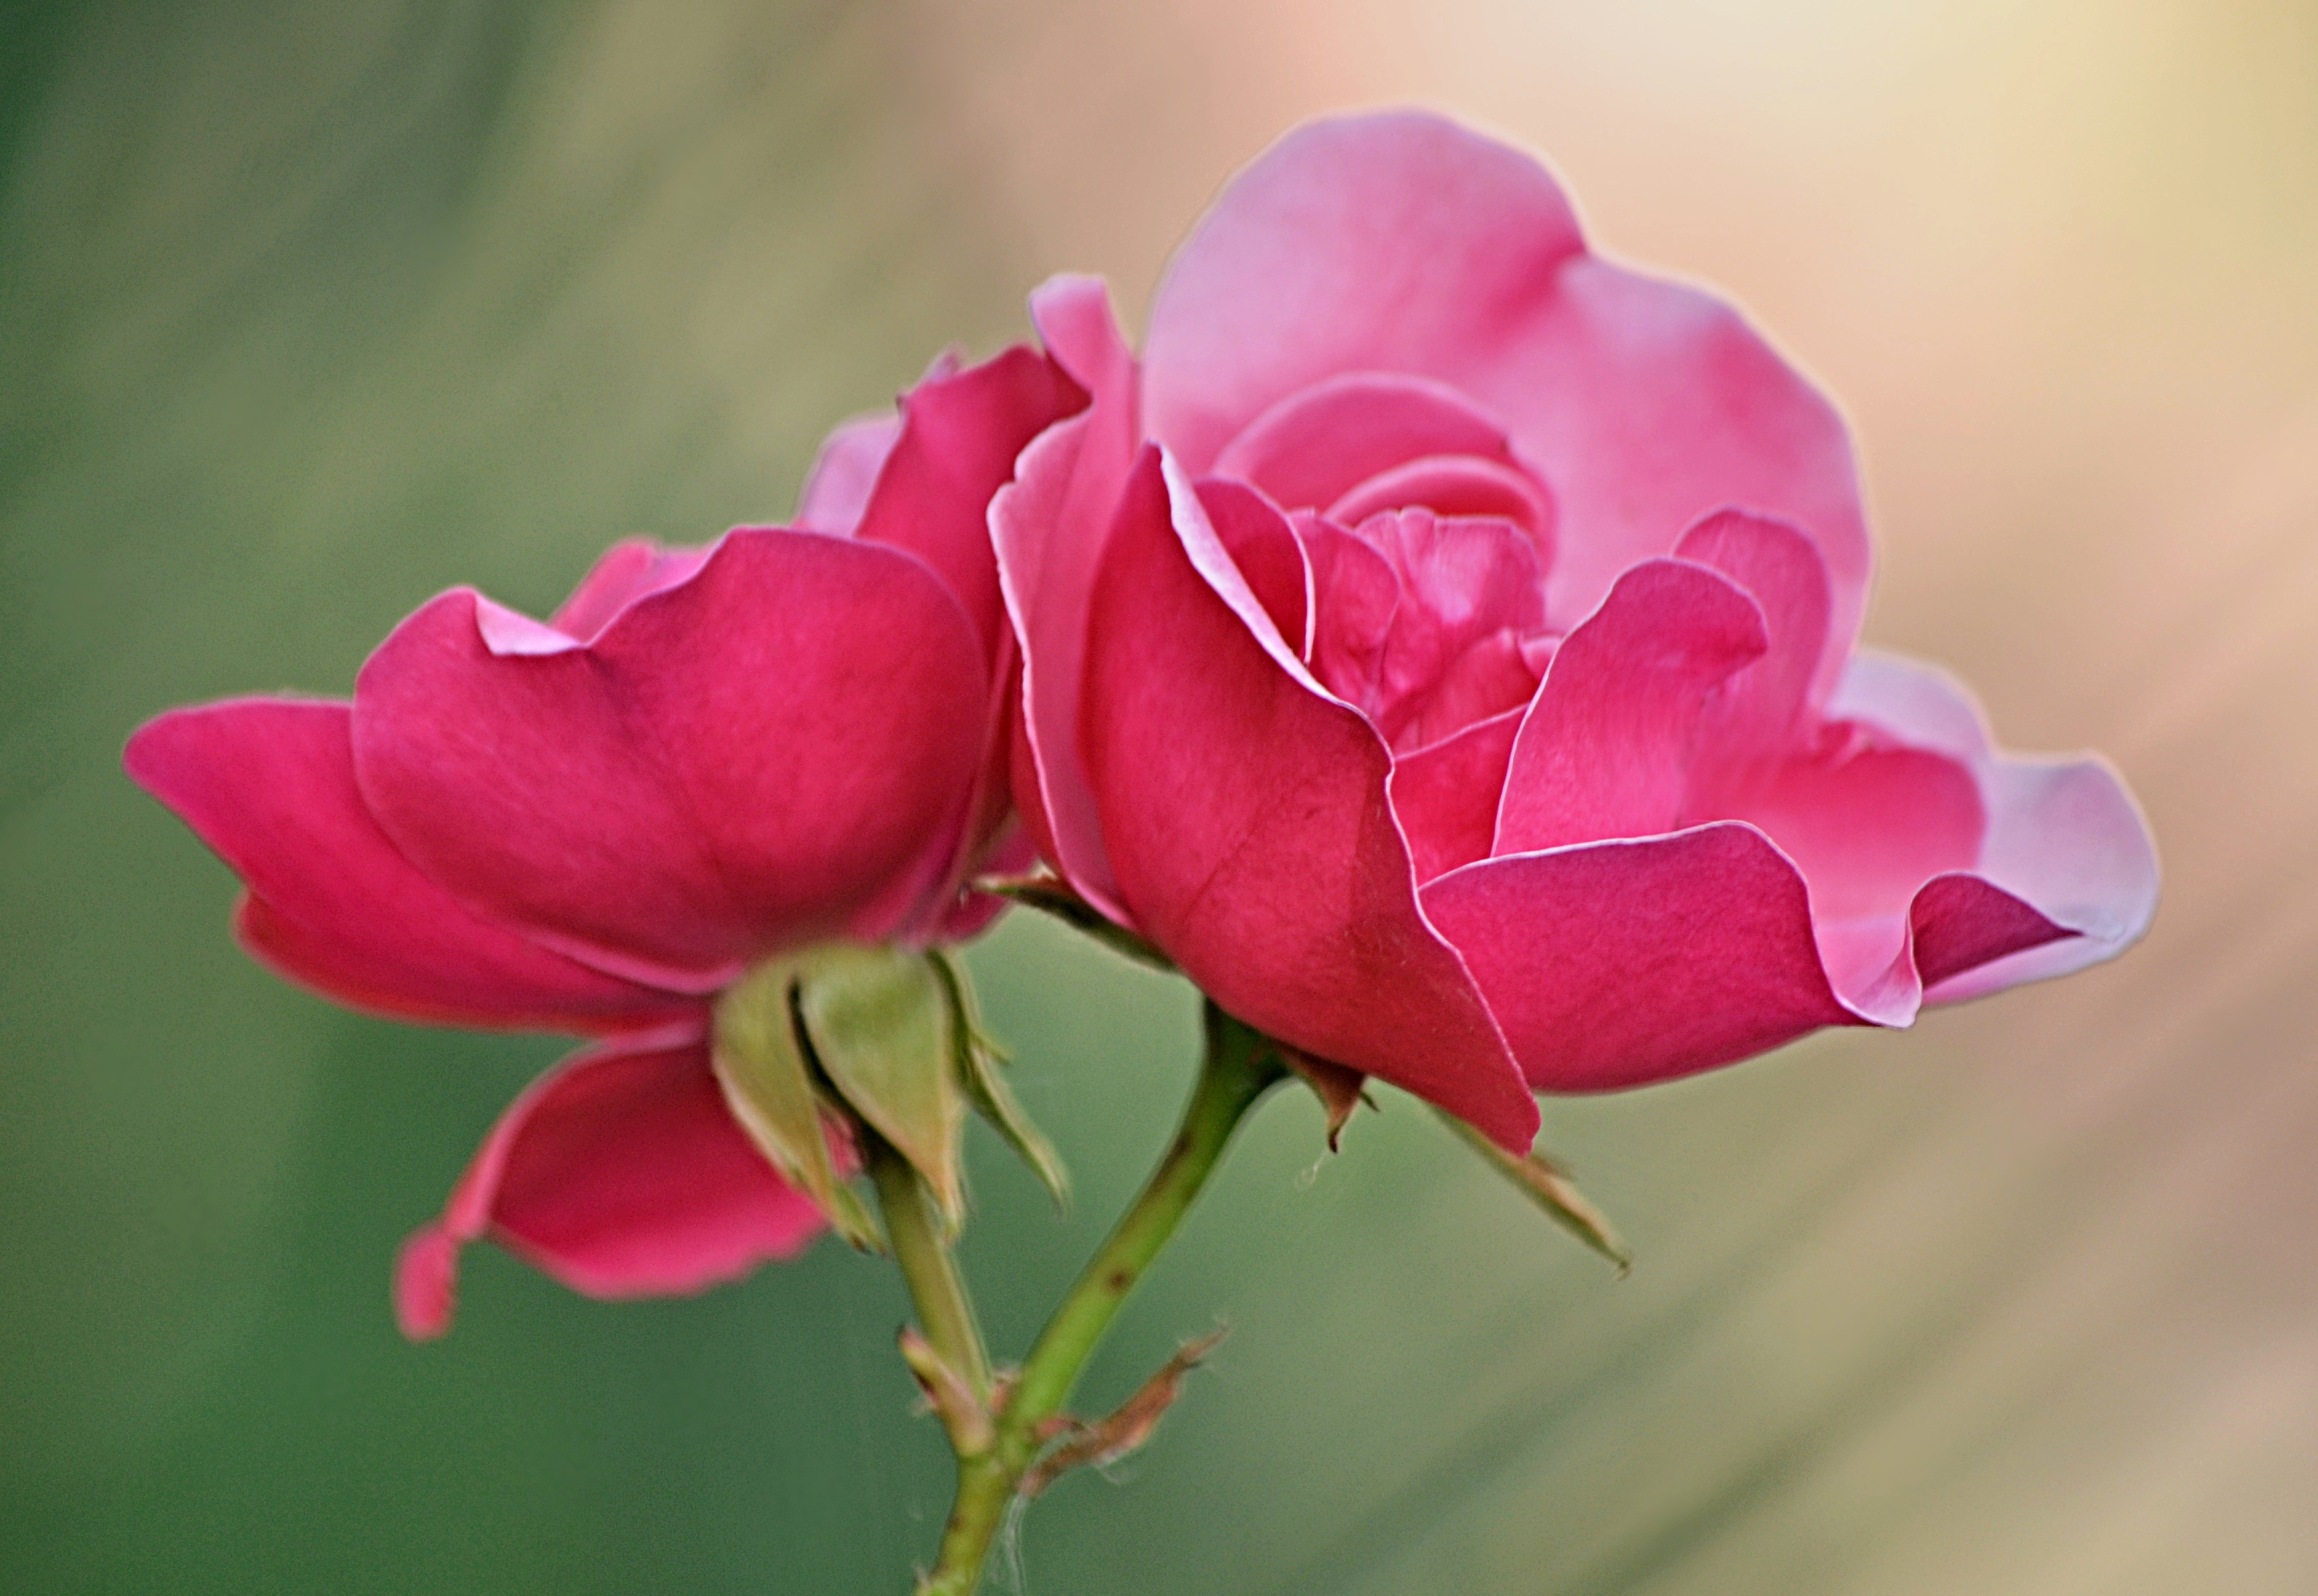 download gratuito di sfondi di fiori,fiore,pianta fiorita,petalo,rosa,rose da giardino